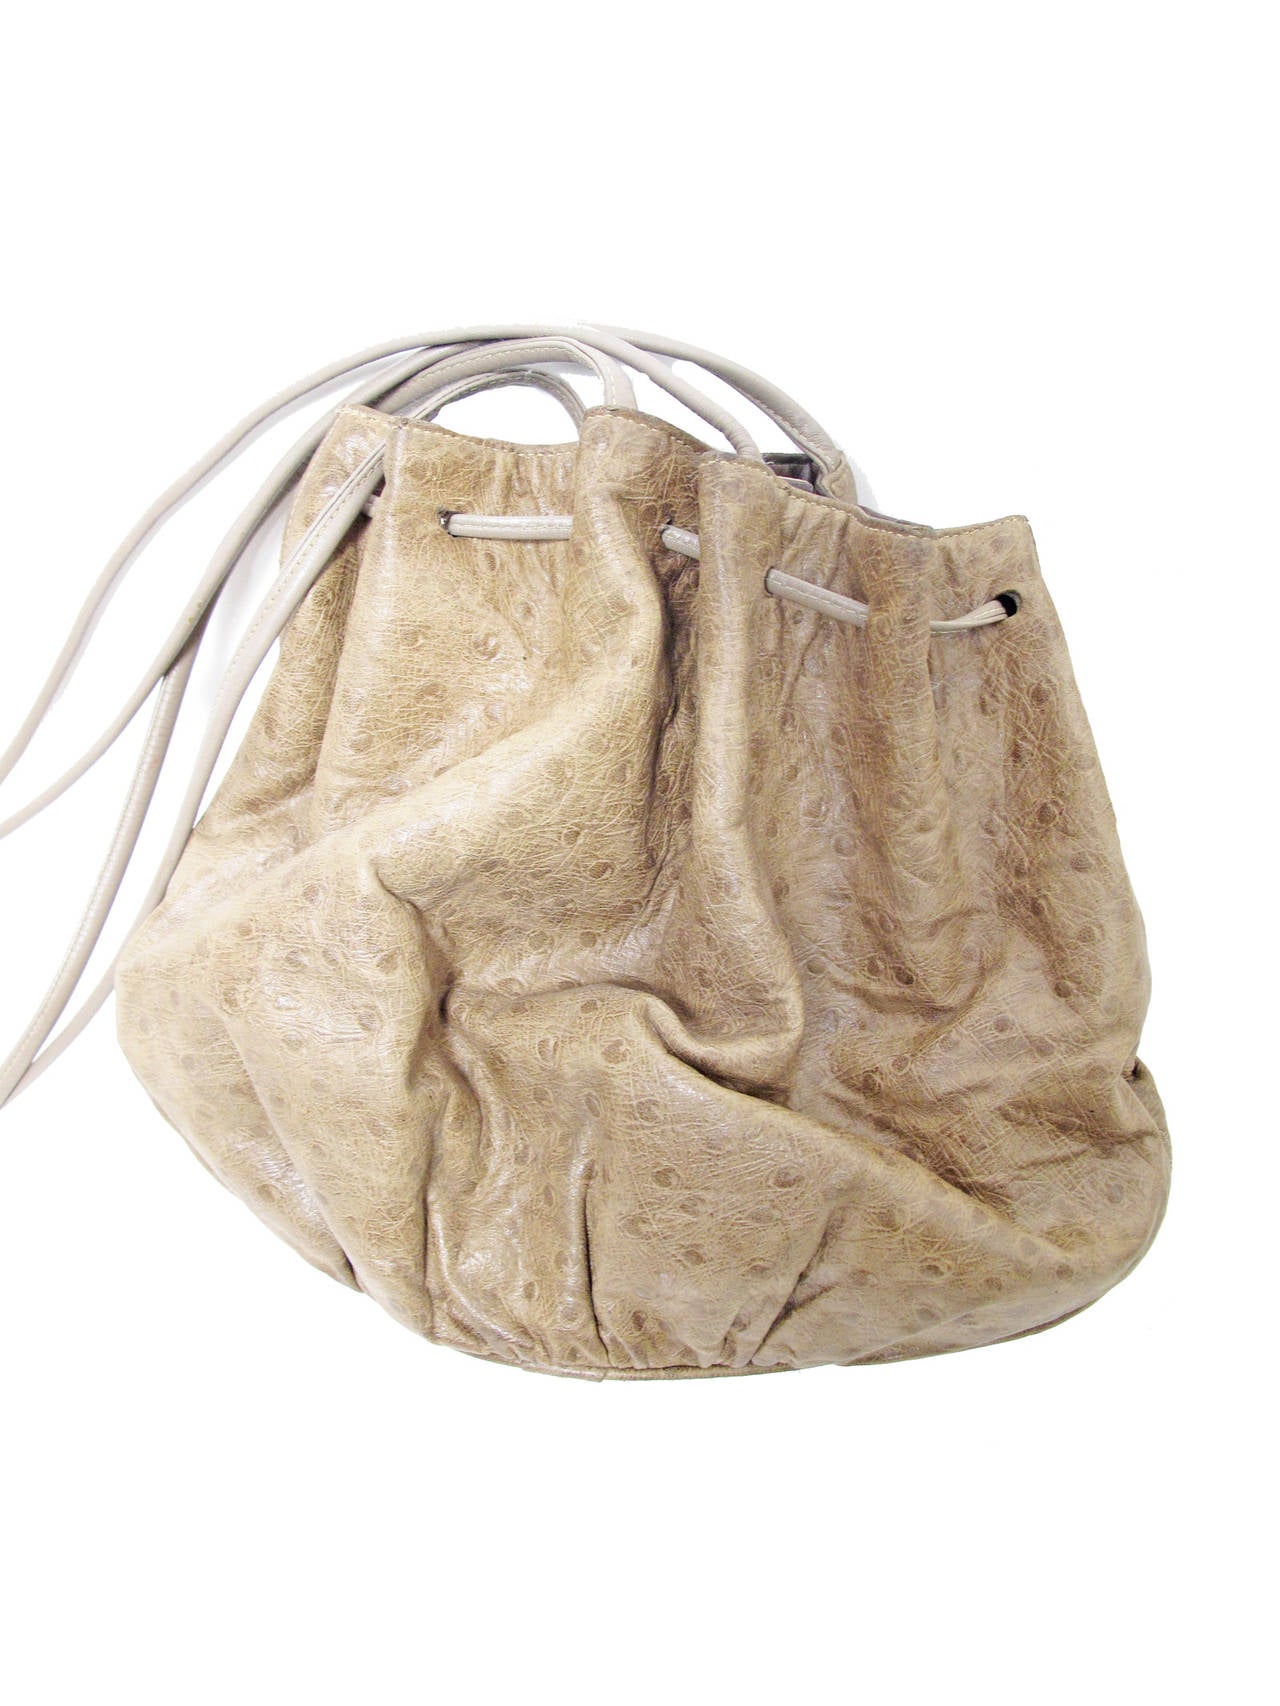 Halton brown stamped leather shoulder bag with drawstring closure.  Strap length 18